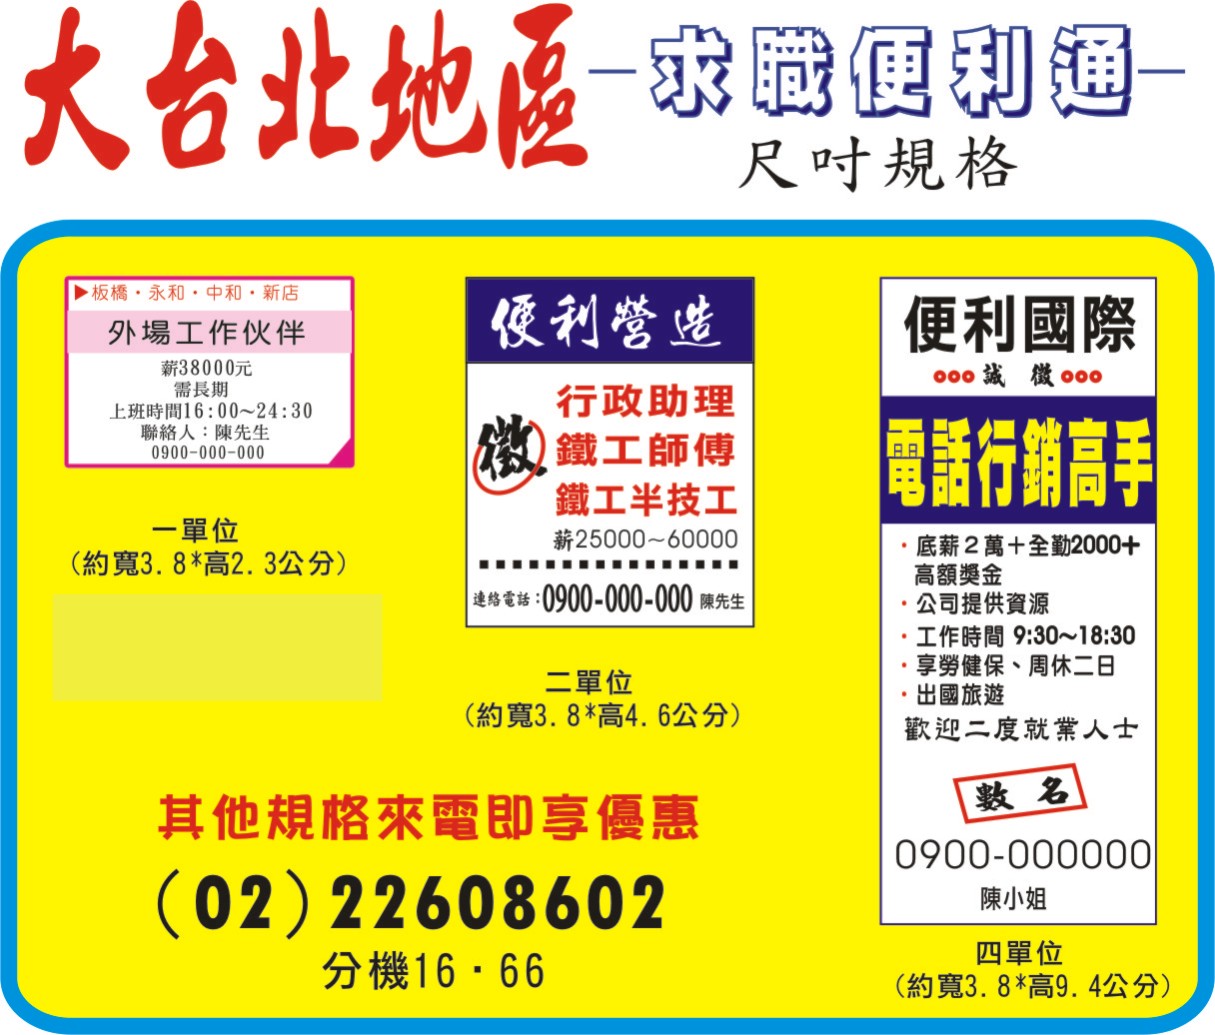 台北市、新北市求職便利通廣告